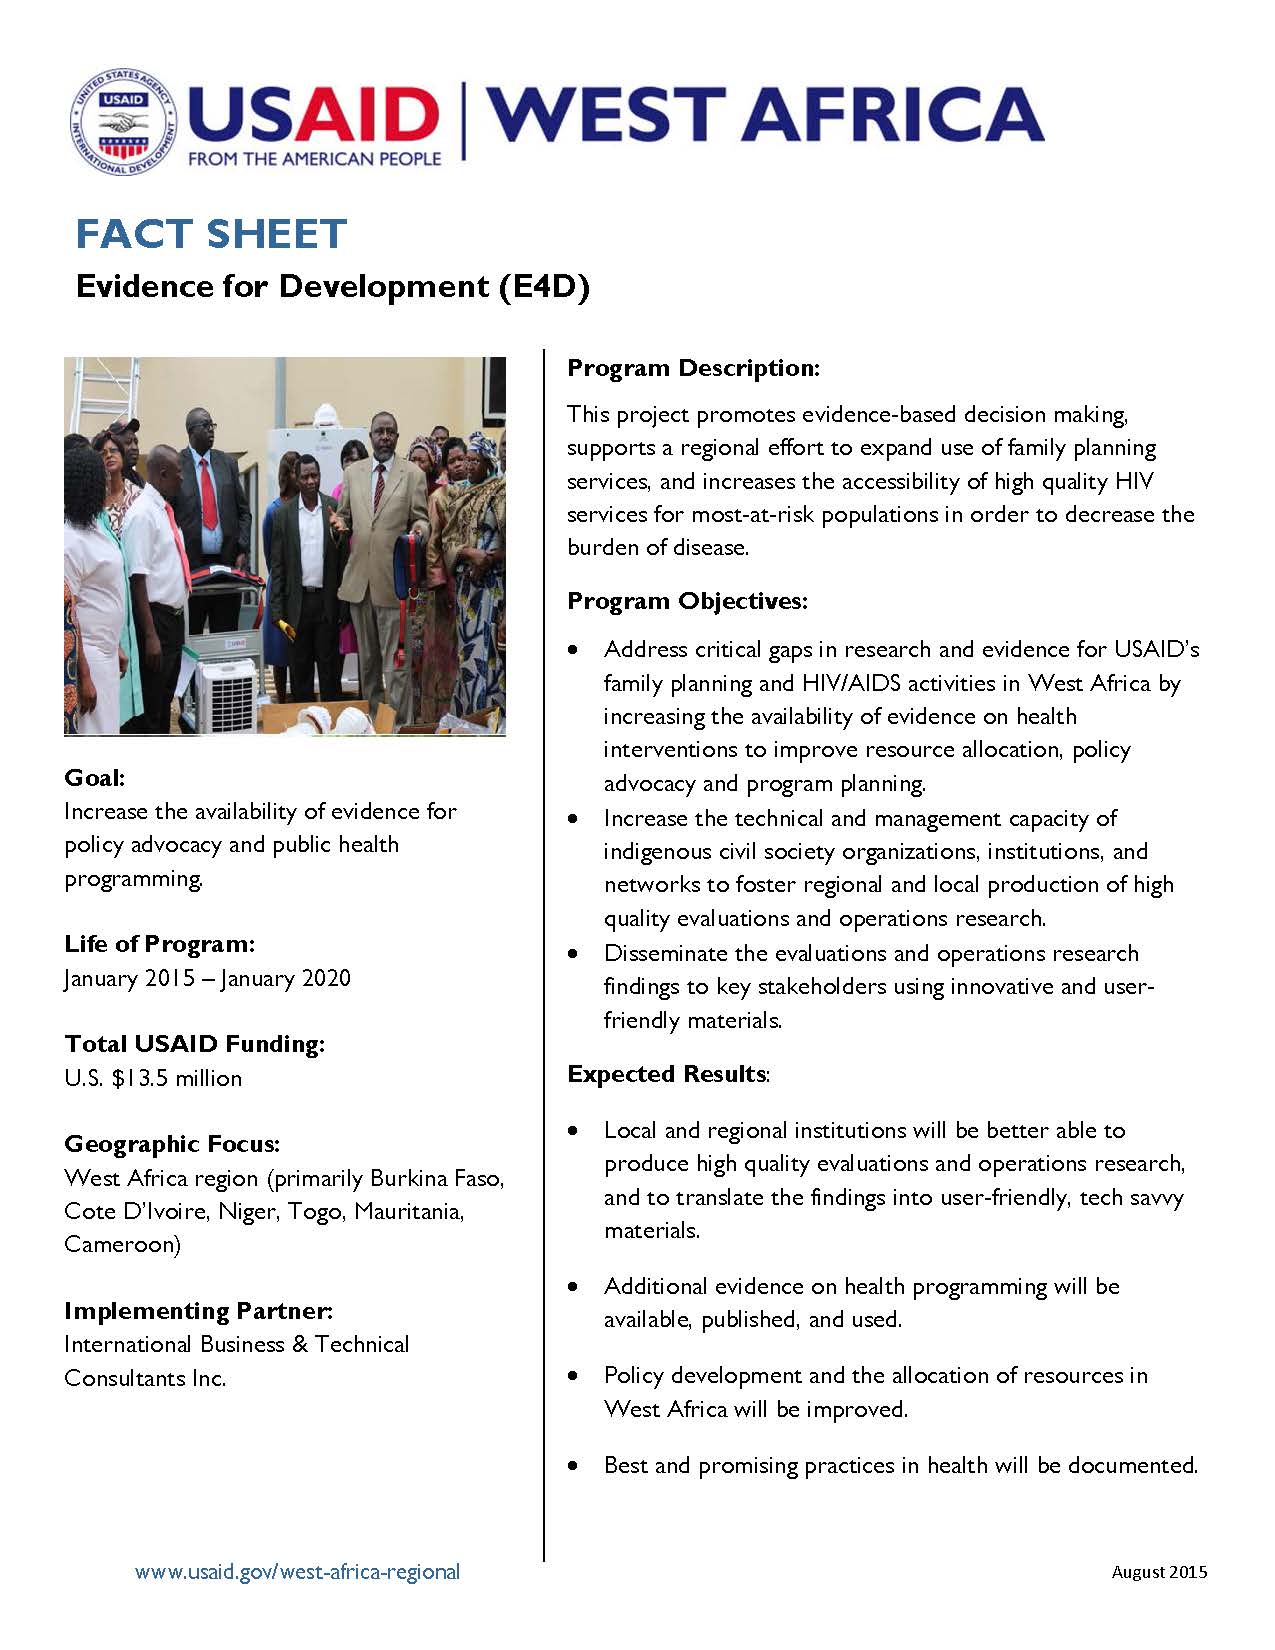 Evidence for Development (E4D) Fact Sheet